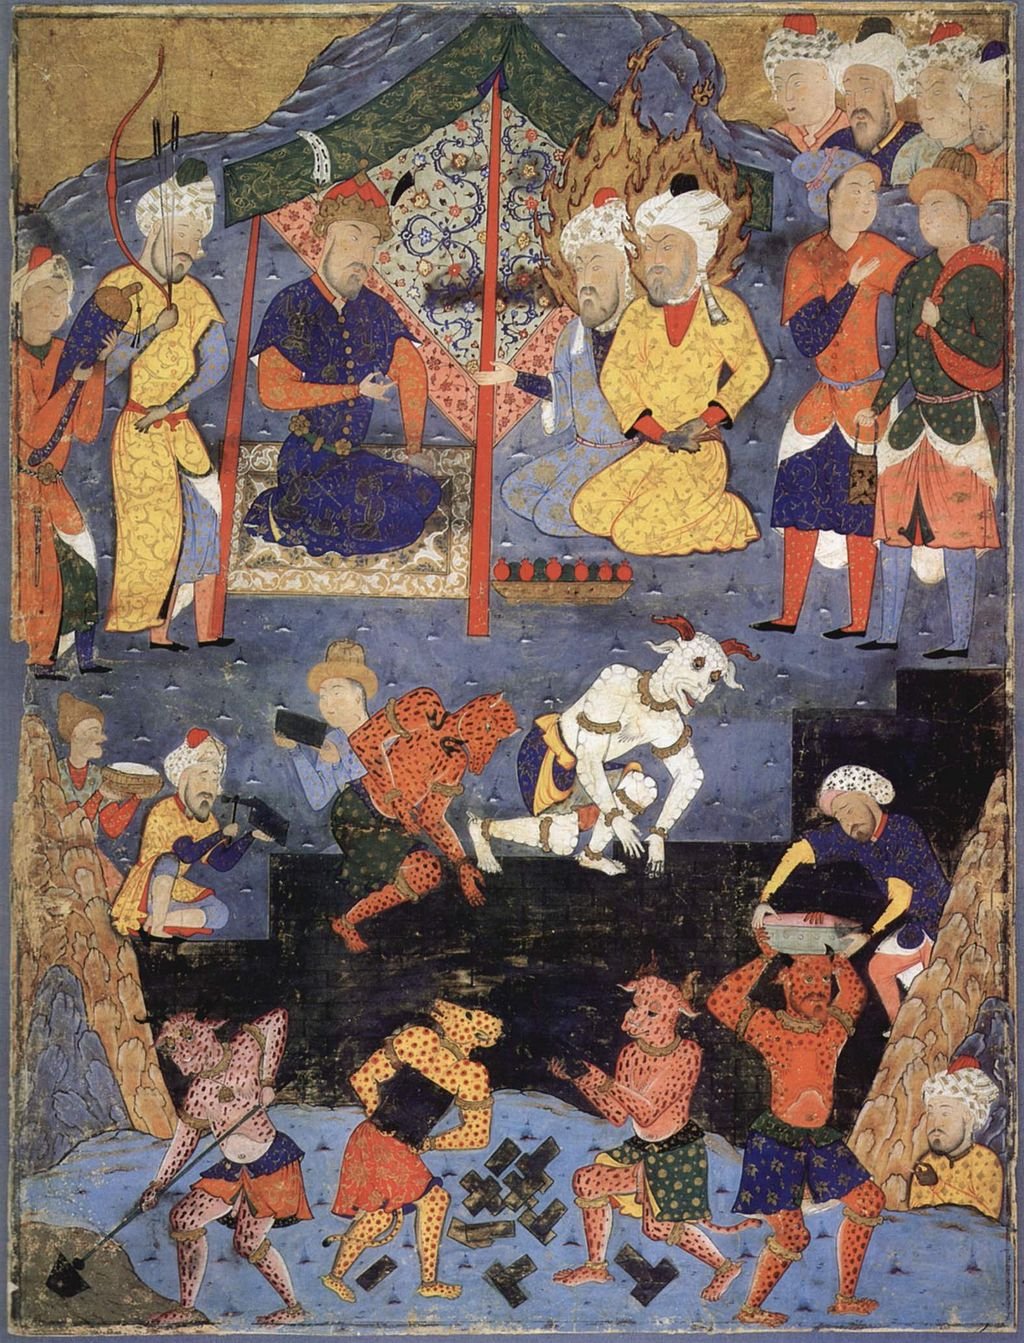 Miniatura persa do século XVI mostrando os jinn ajudando na construção de um muro. (Fonte: Wikimedia Commons)dando humanos